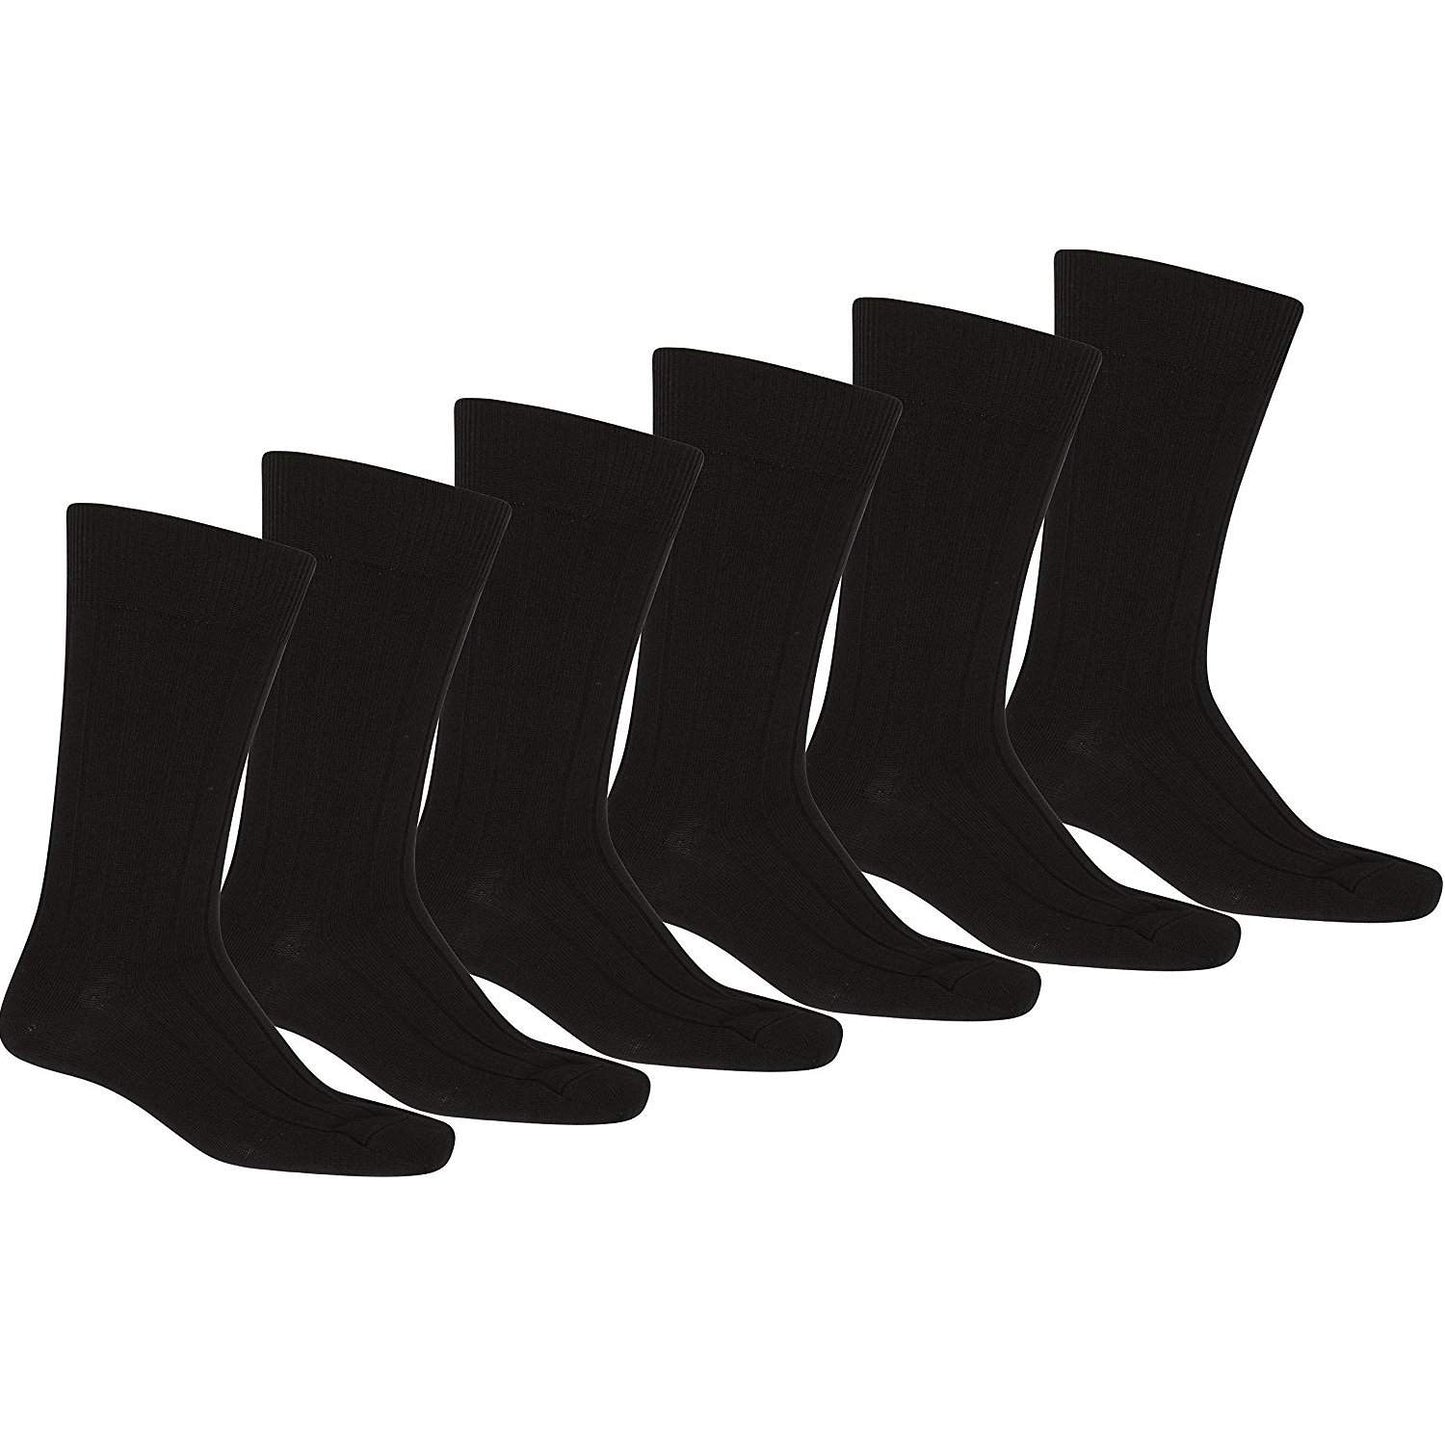 40 Pack of Jordefano Men Black Solid Plain Dress Socks